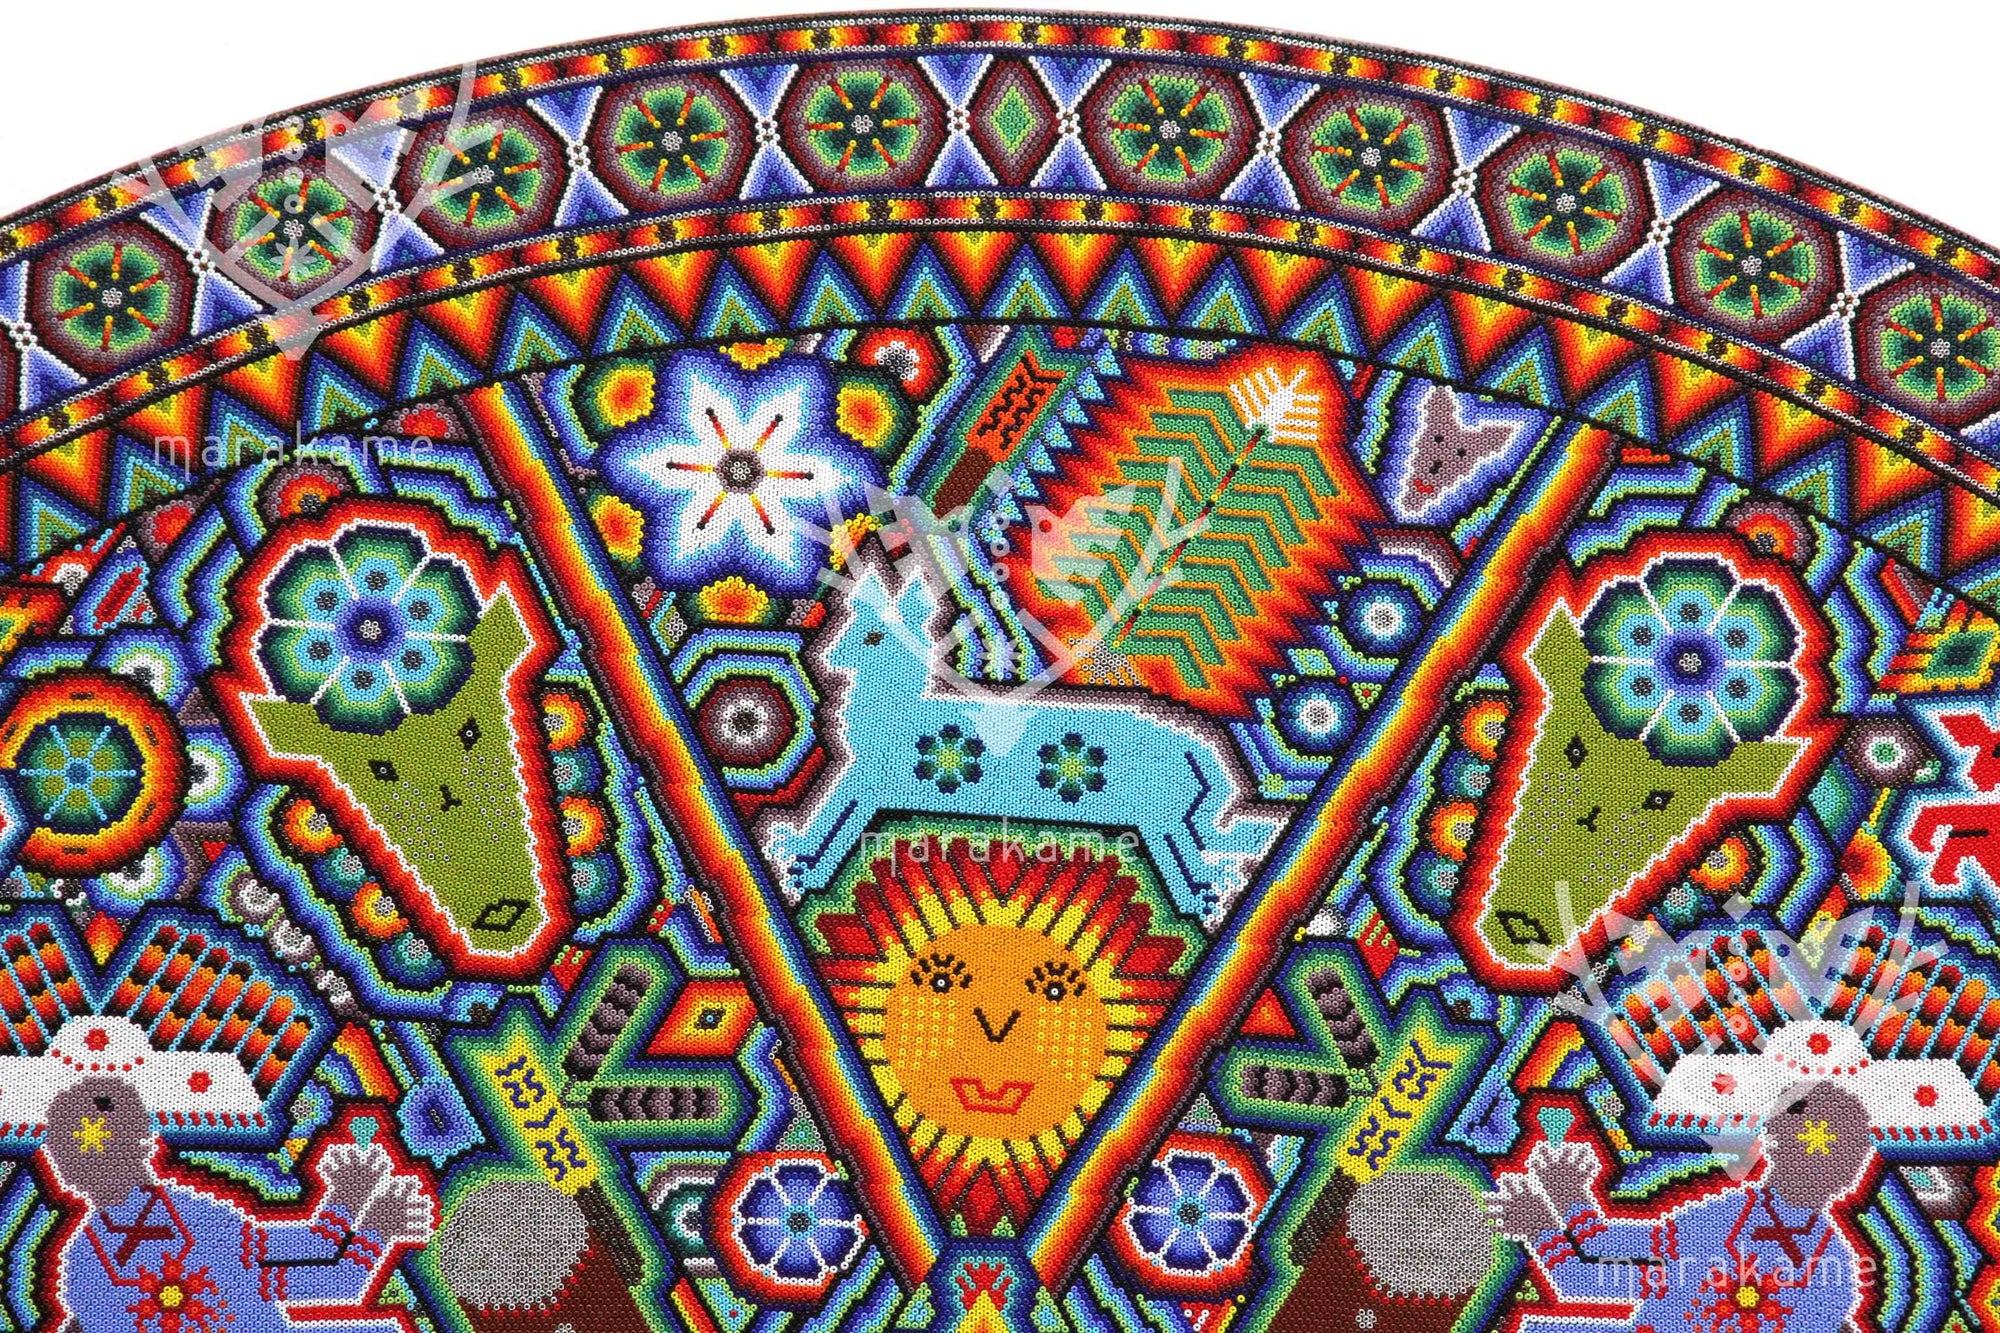 Nierika de Chaquira Kreis Huichol - Mawaxira - 120 cm. Erster Preis bei der Huichol-Kunstbiennale.